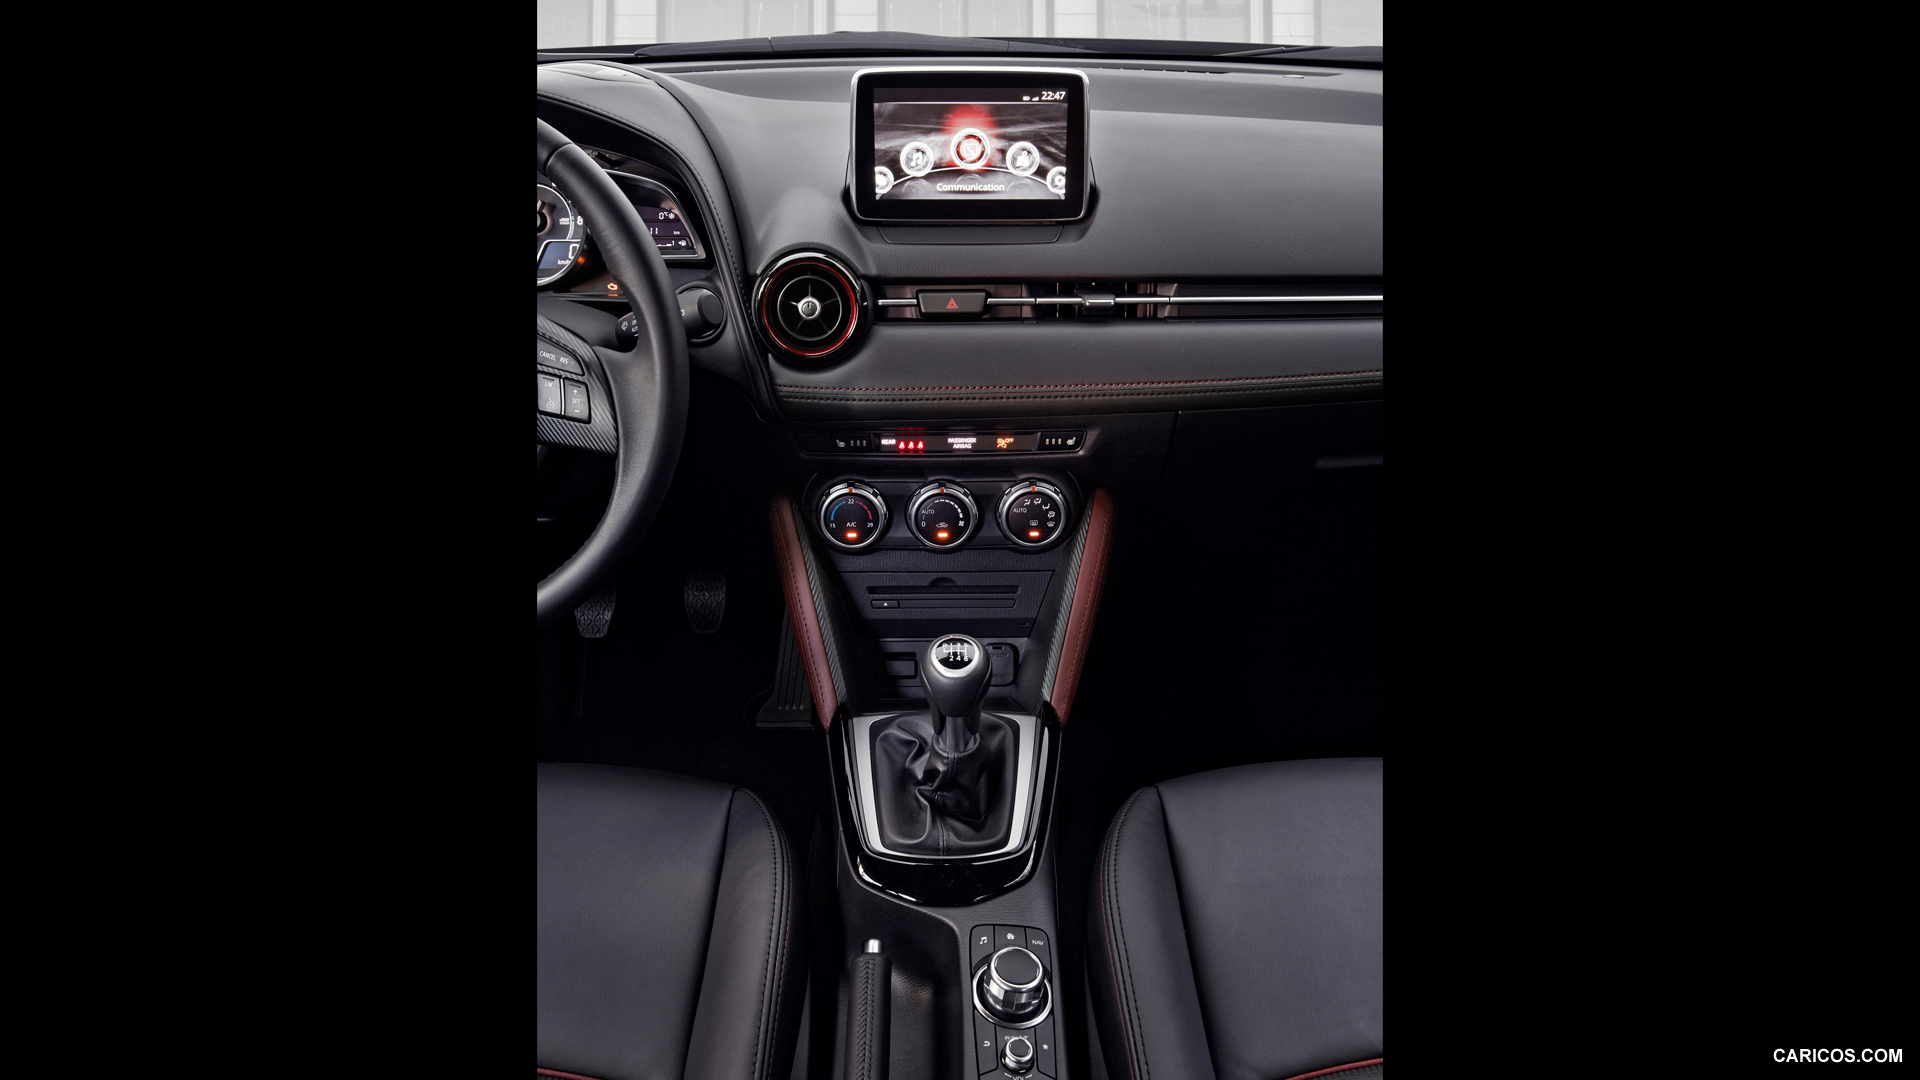 2016 Mazda CX-3  - Central Console, #216 of 285